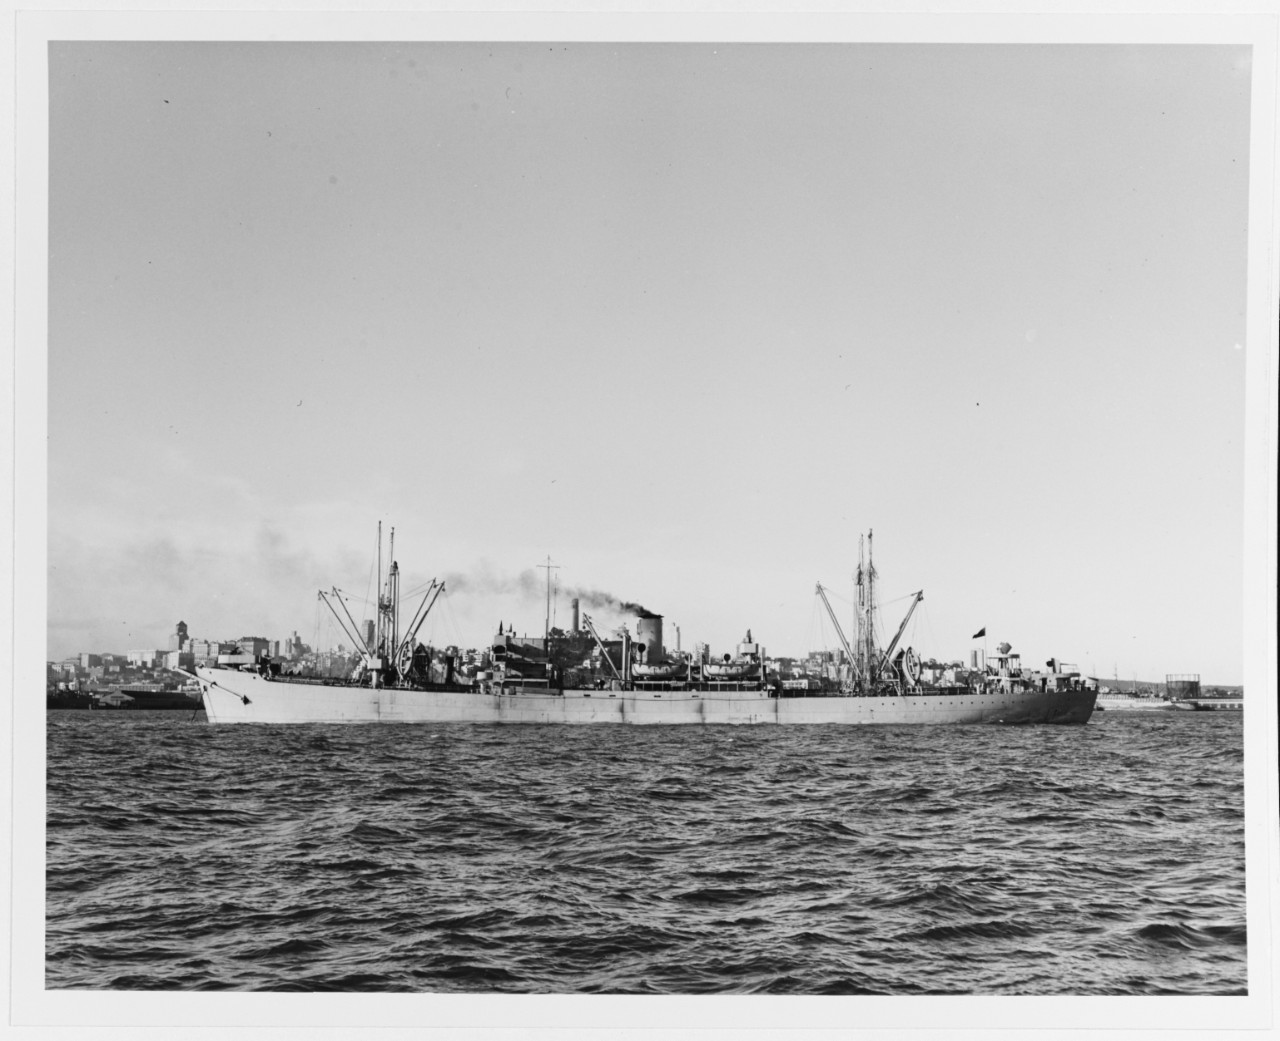 S.S. MEWATA PARK (British Merchant Freighter, 1944-1960)